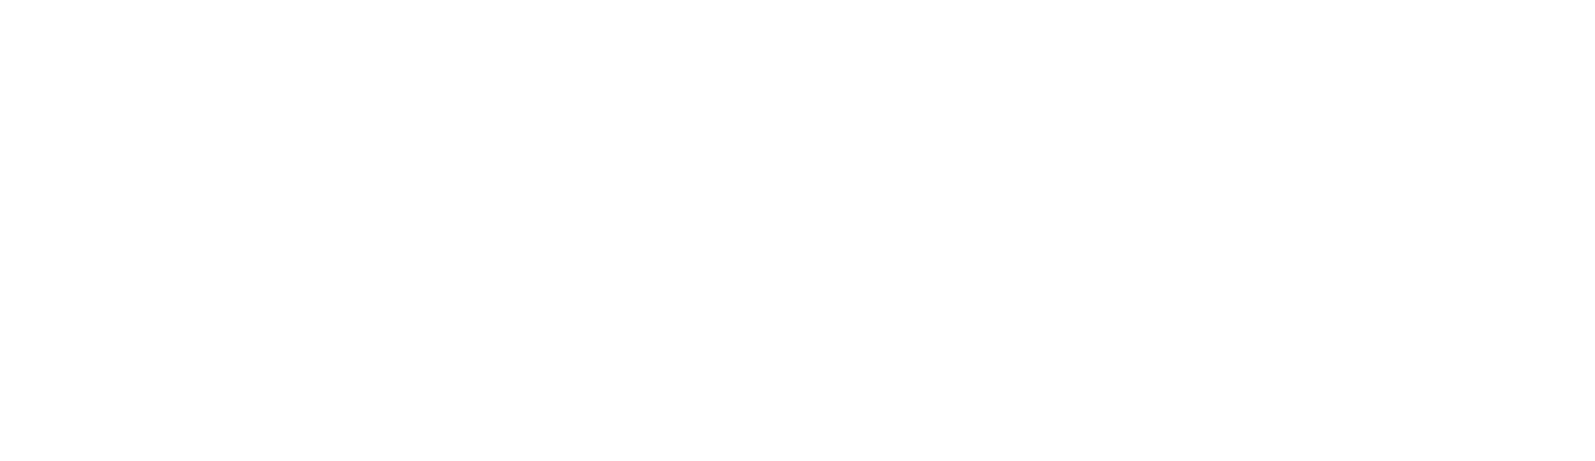 Knights Group Logo groß für dunkle Hintergründe (transparentes PNG)